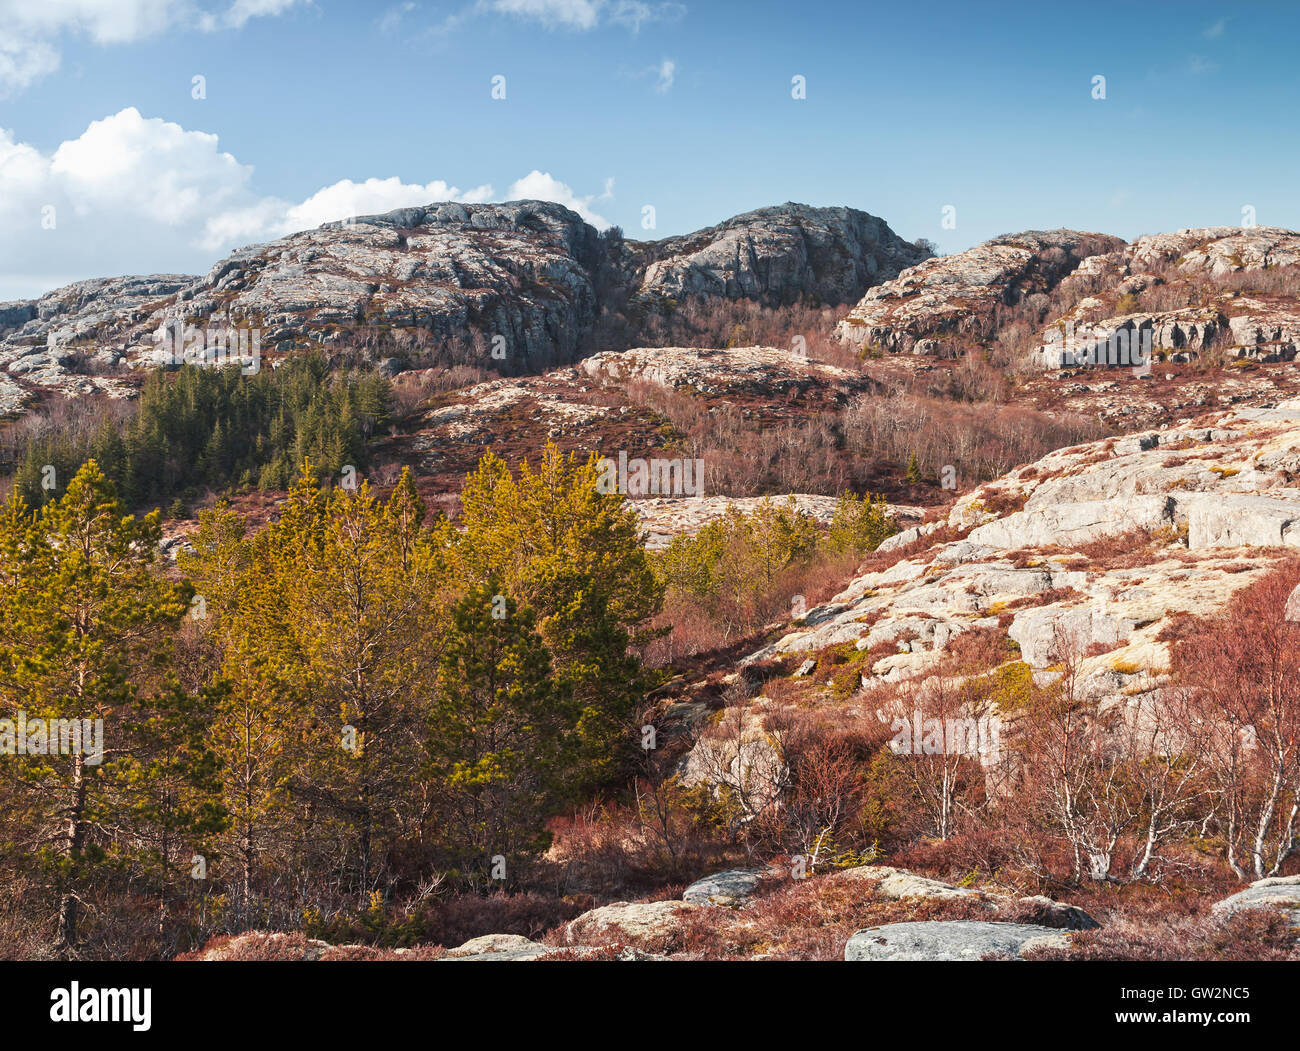 Le nord de la Norvège au printemps. Paysage de montagne avec des pins et rouge de plus en plus sur les rochers. Moss Photo correction tonale fil chaud Banque D'Images